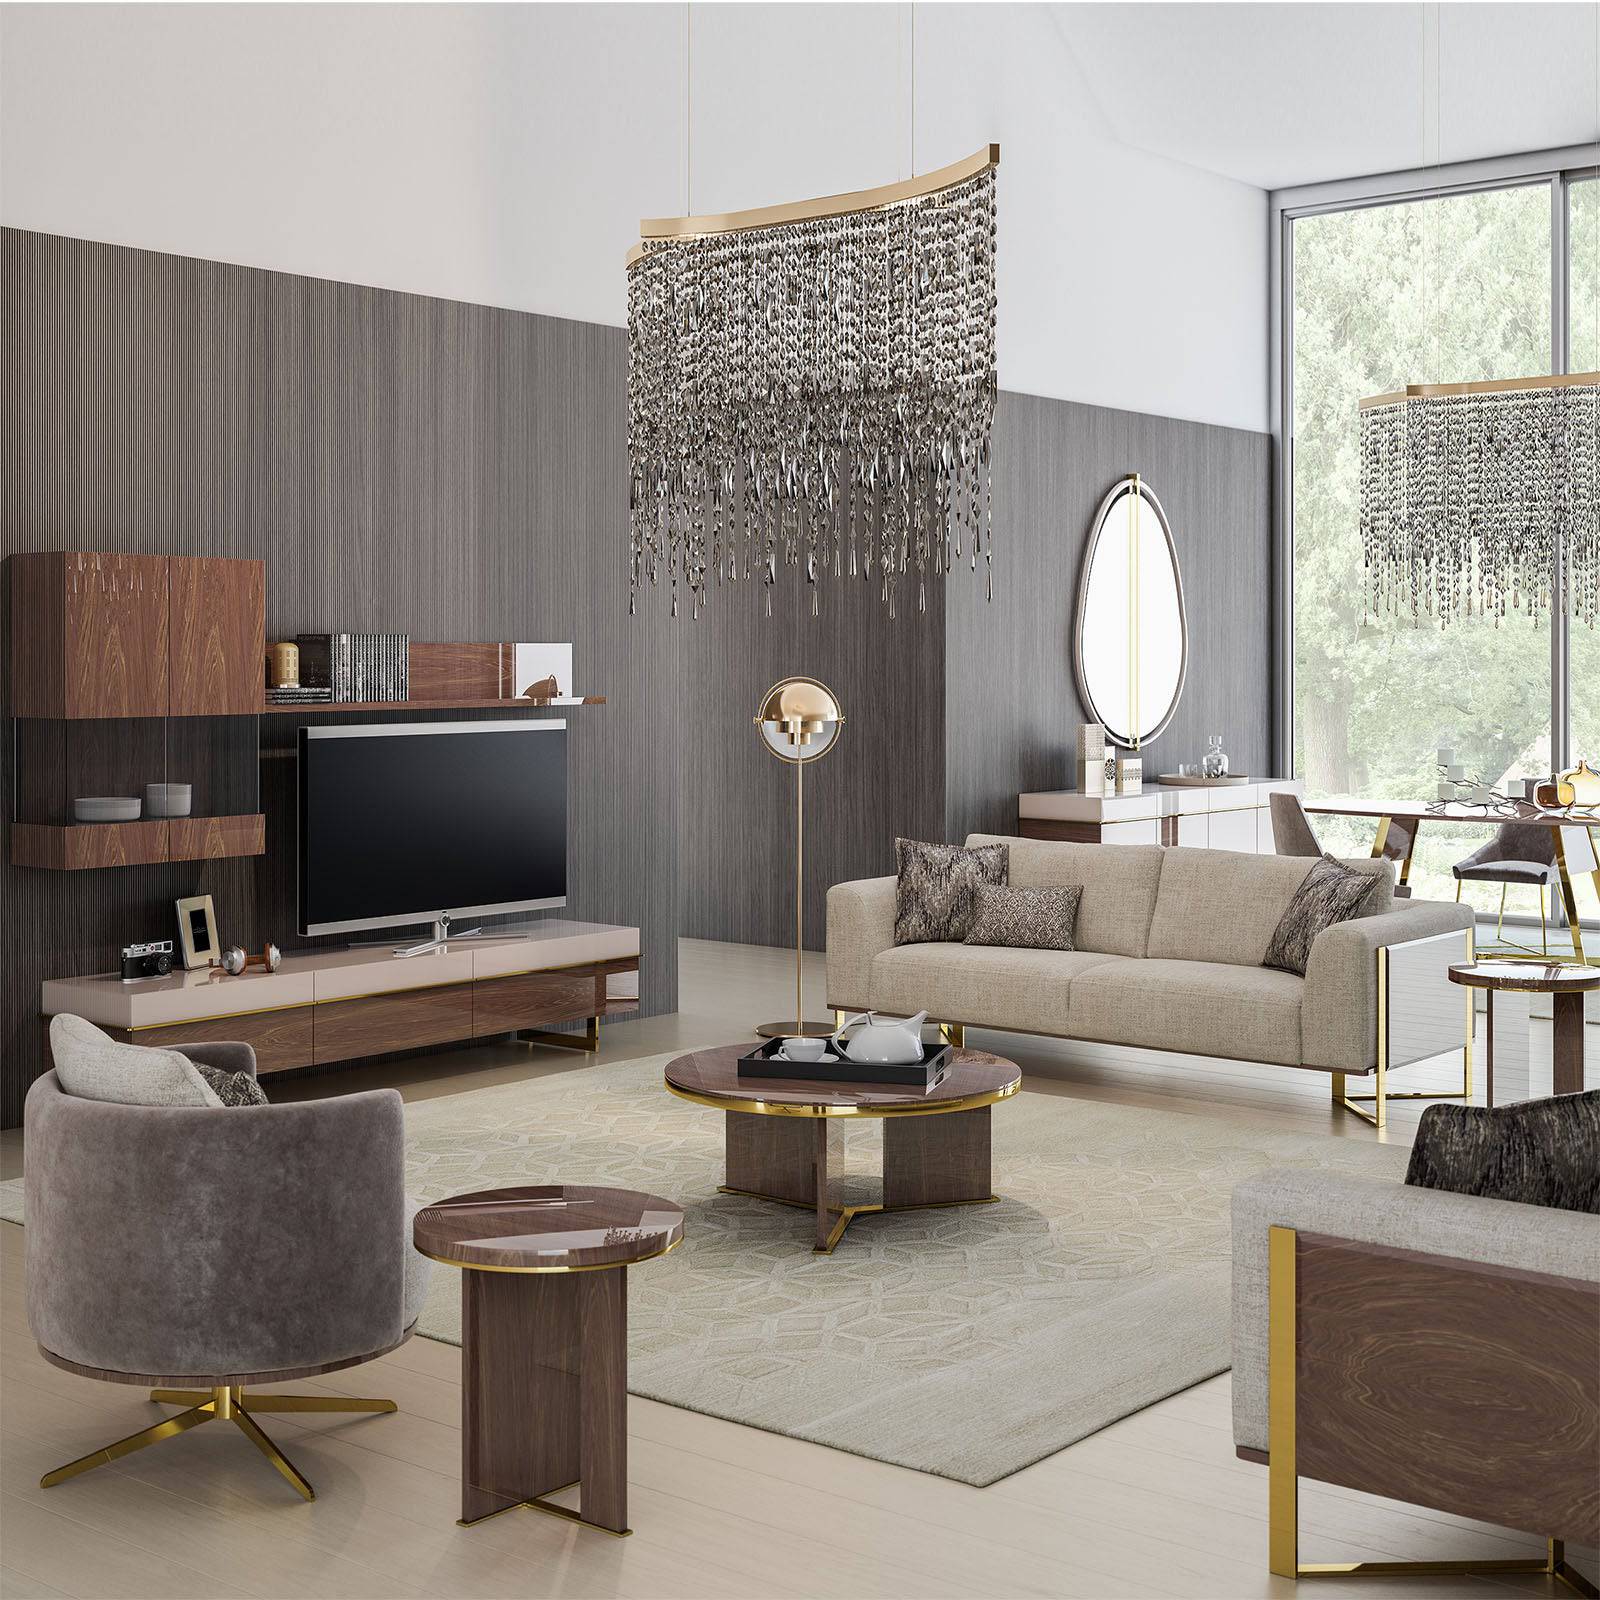 Aura Side Table Aura-Side -  Side Tables | طاولة جانبية أورا - ebarza Furniture UAE | Shop Modern Furniture in Abu Dhabi & Dubai - مفروشات ايبازرا في الامارات | تسوق اثاث عصري وديكورات مميزة في دبي وابوظبي